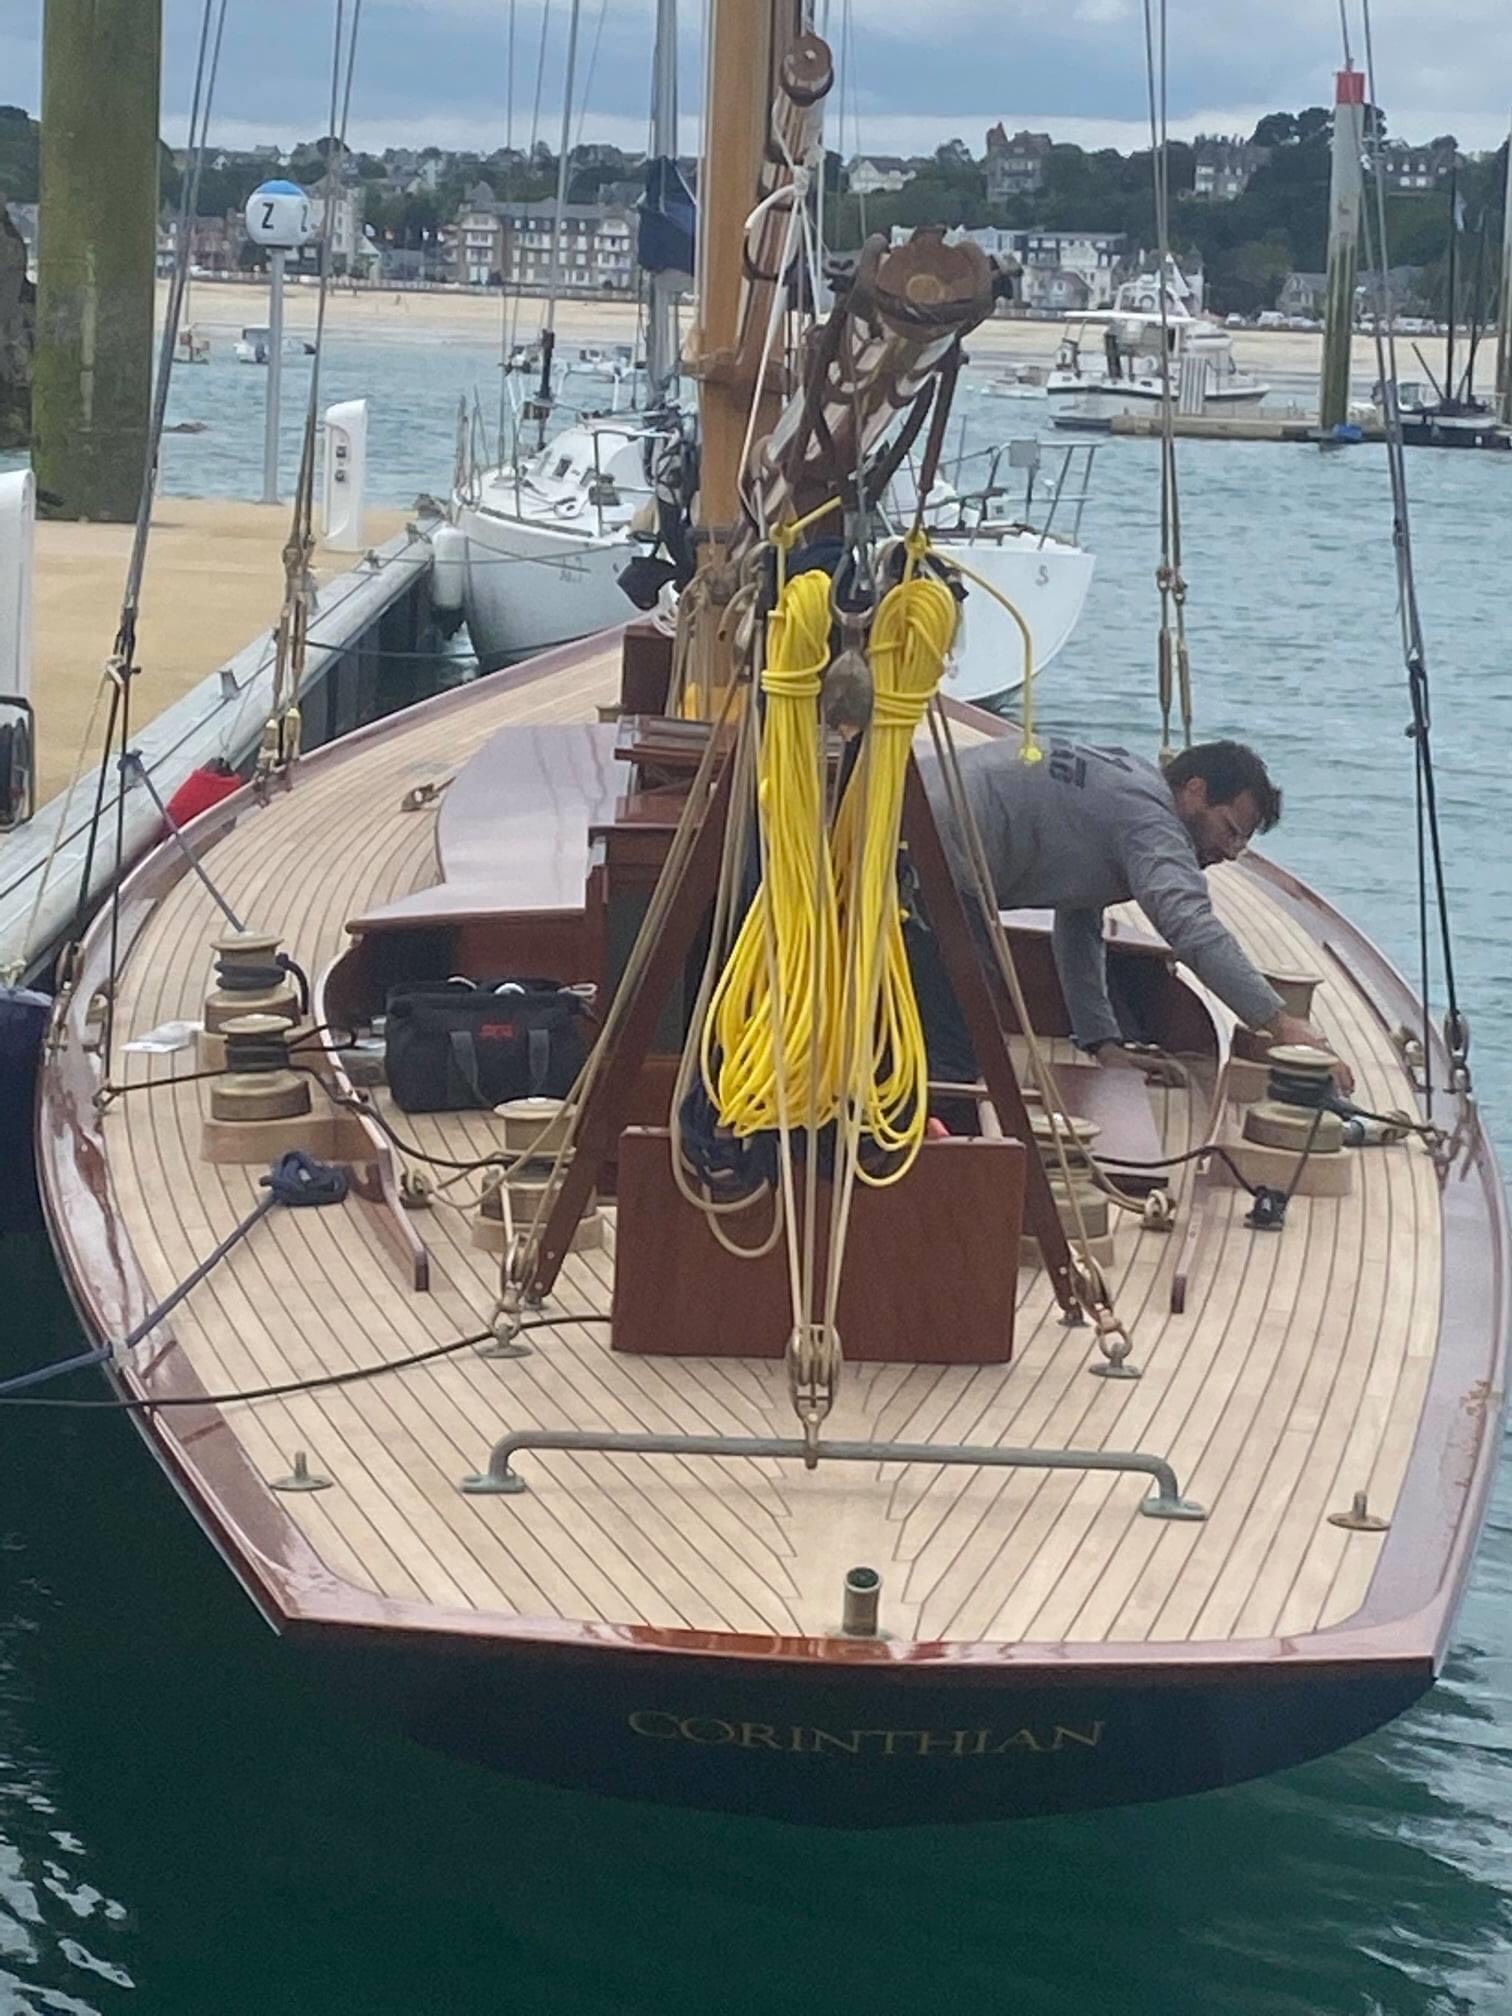 corinthian yacht club wooden boat show